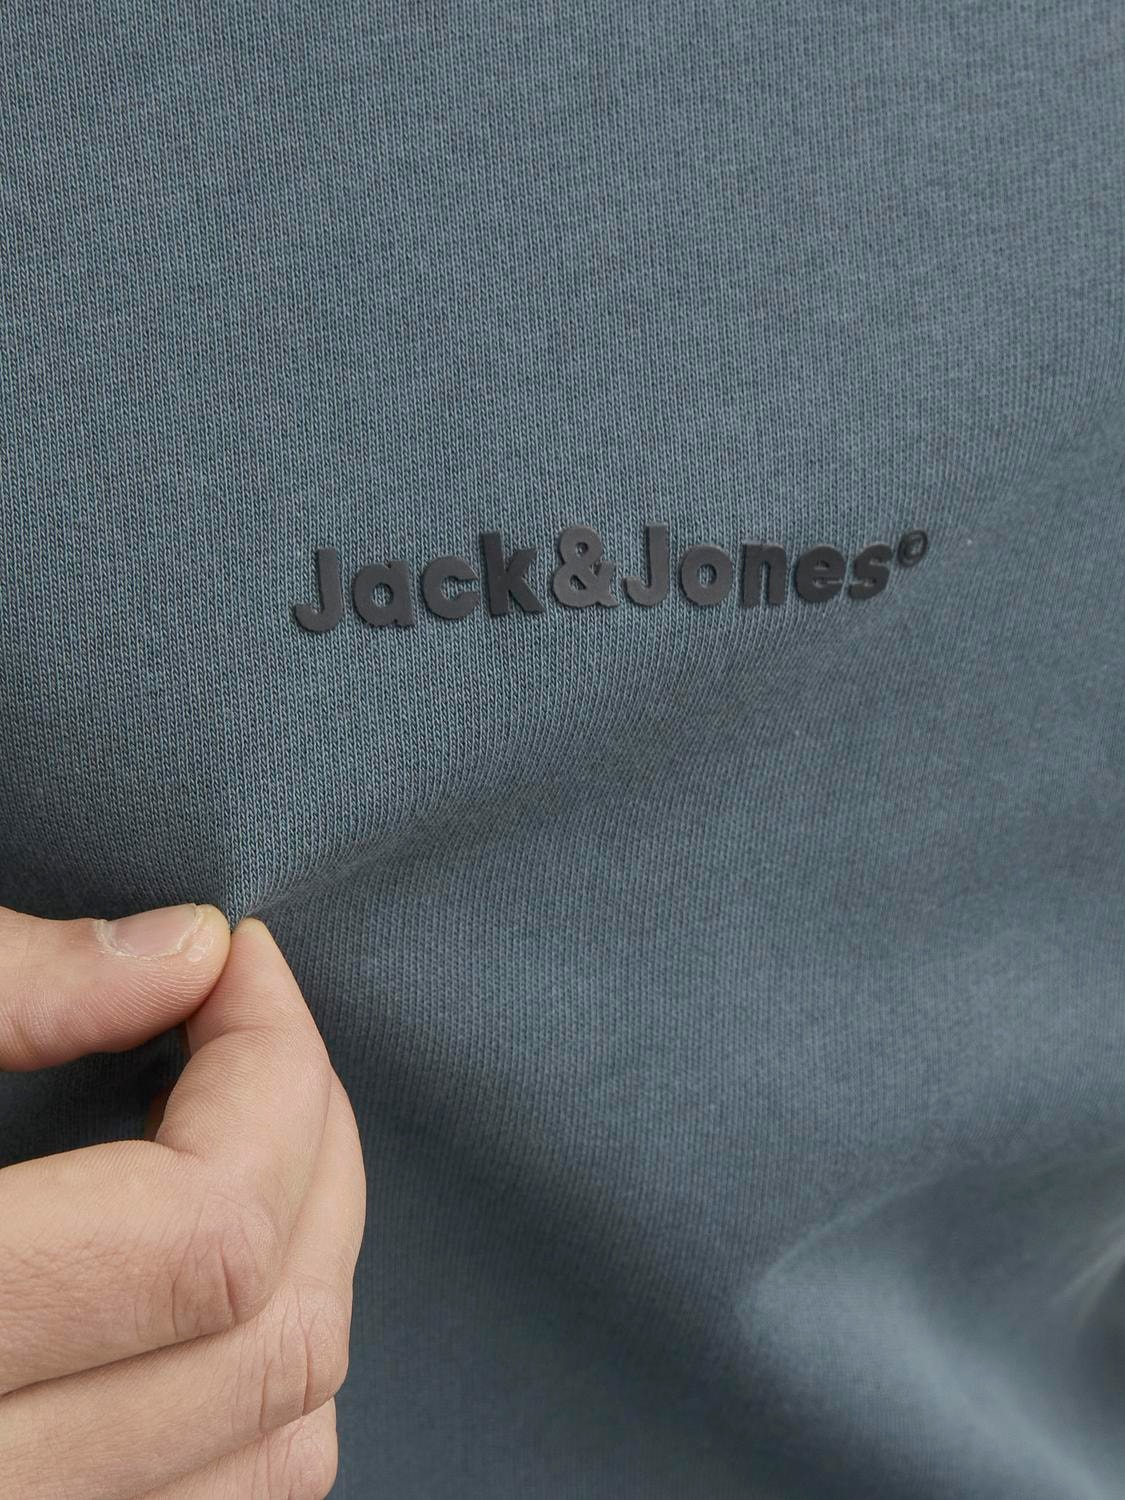 Jack & Jones Z logo Bluza z okrągłym dekoltem -Magical Forest - 12234185